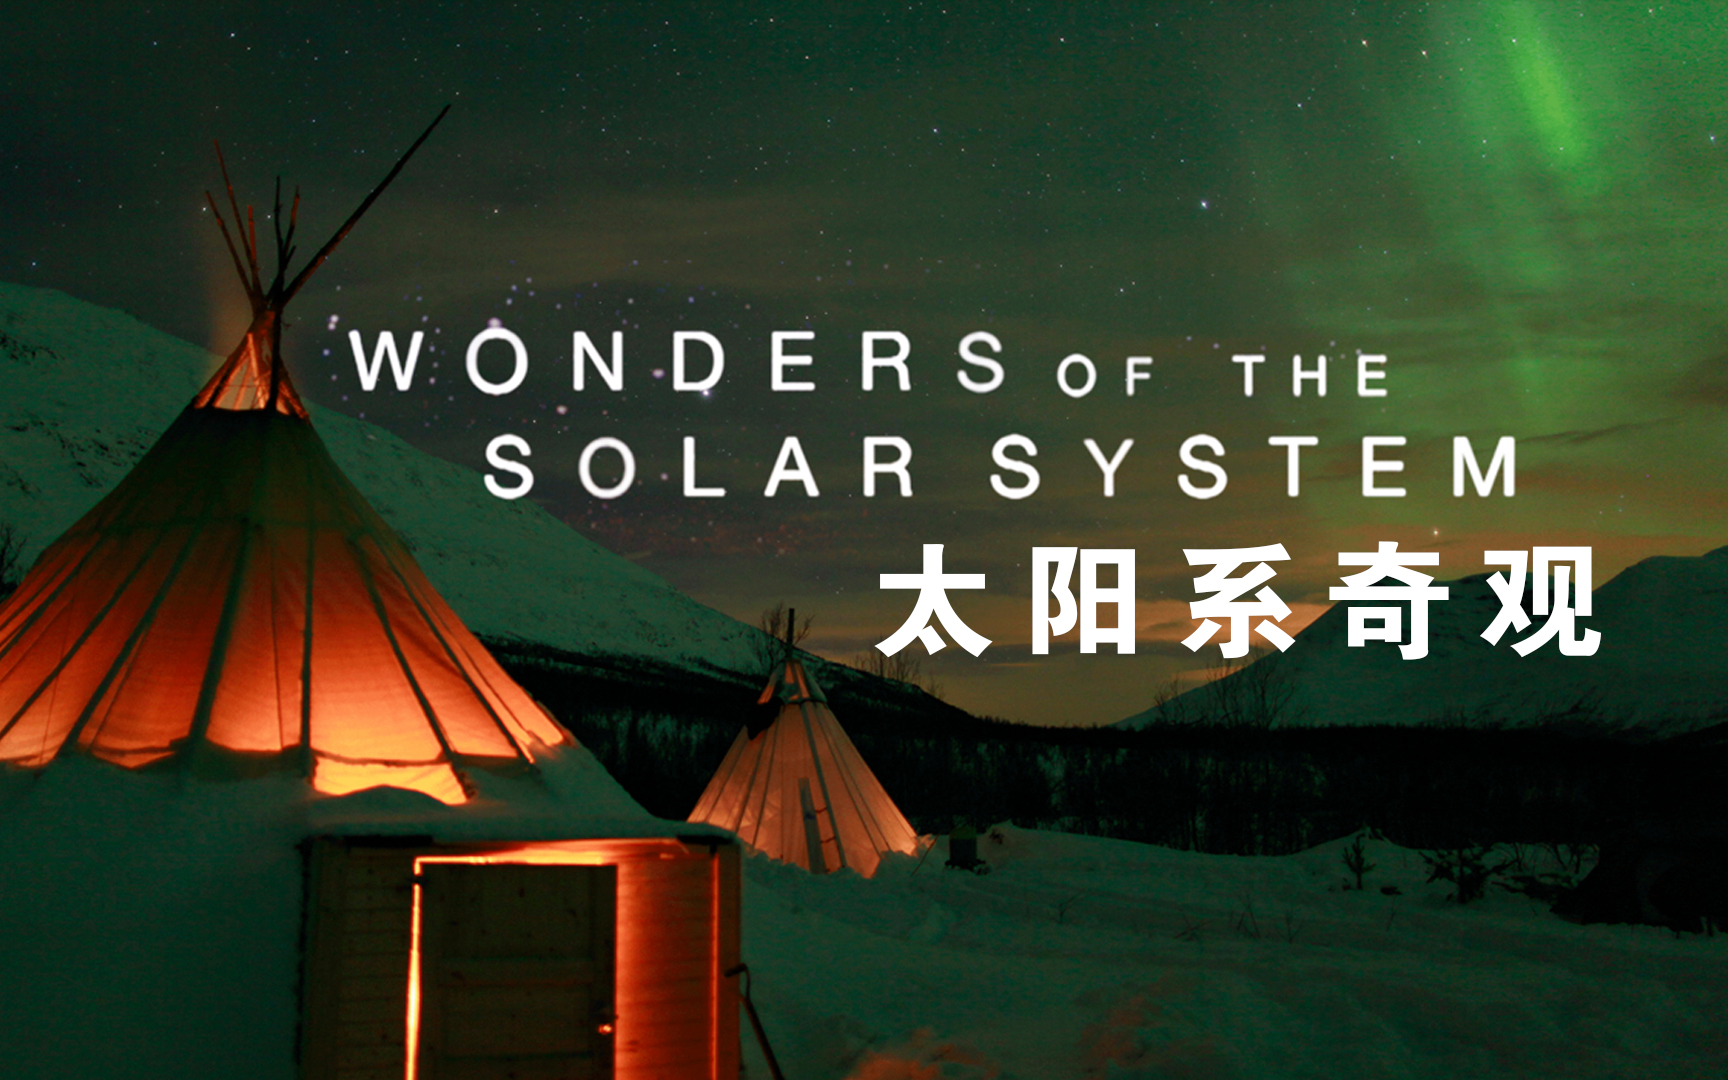 【纪录片】太阳系奇观-Wonders Of The Solar System 